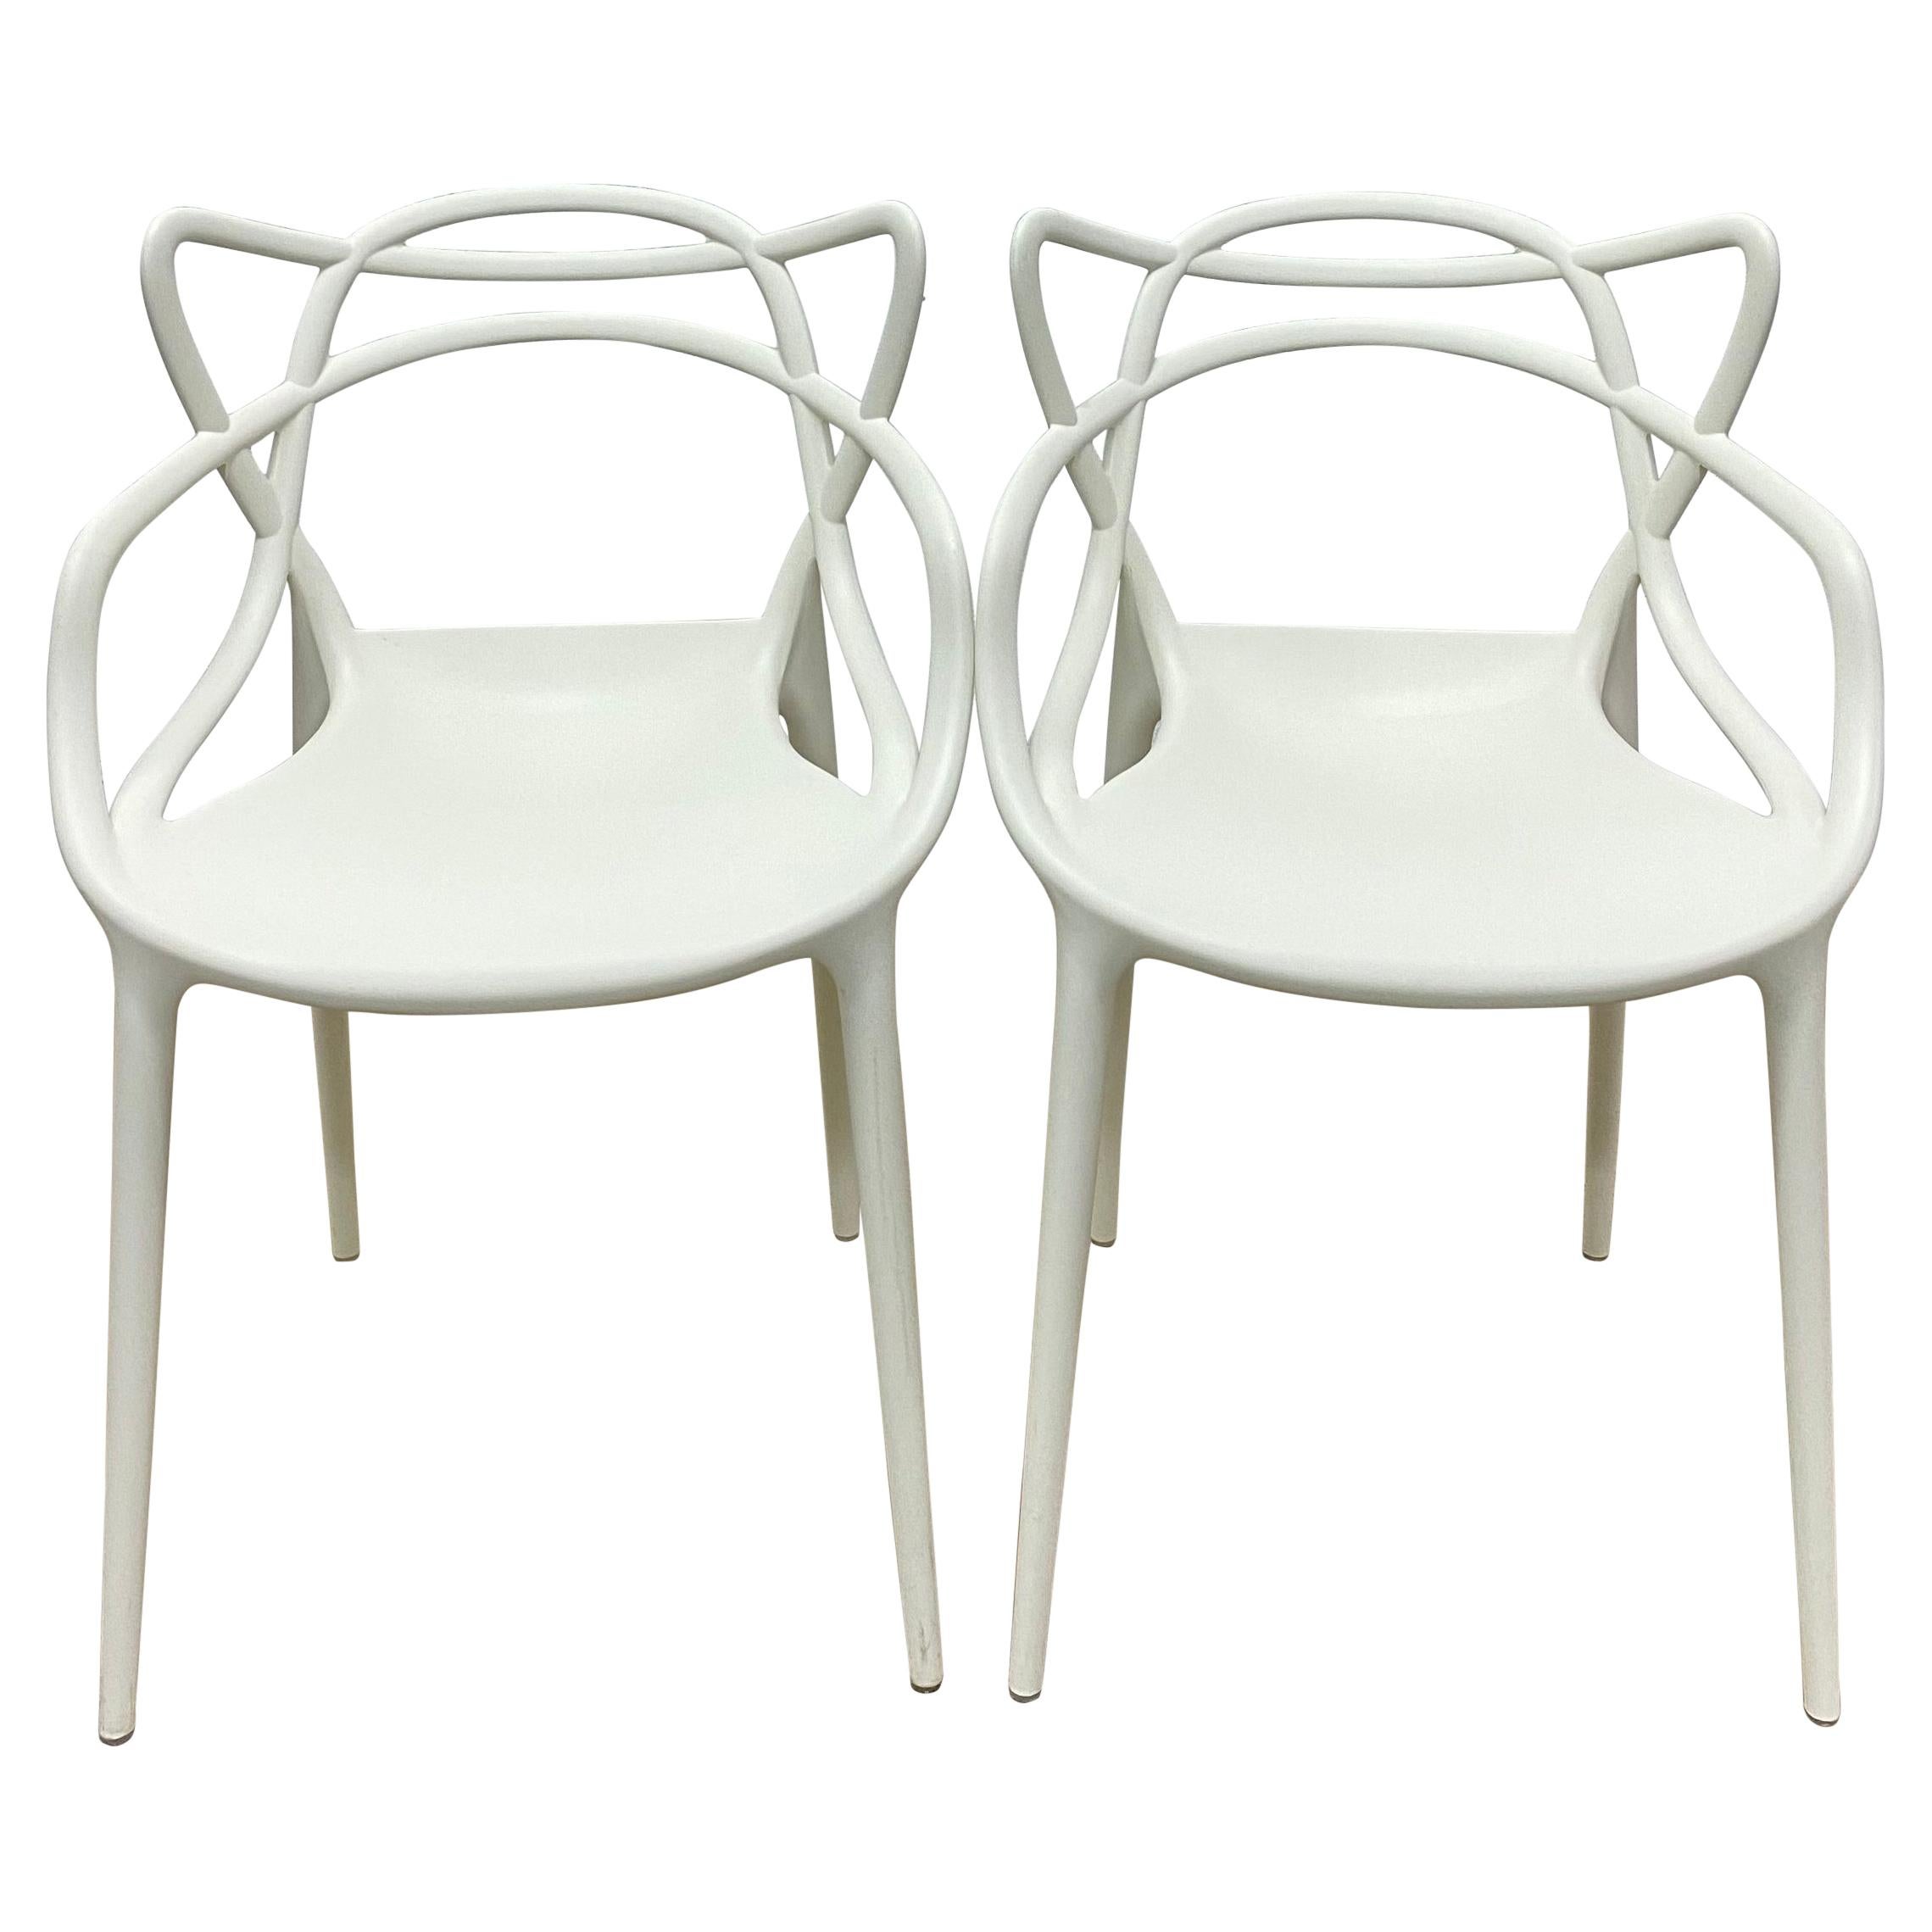 Paire de chaises White Masters de Philippe Starck & Eugeni Quitllet pour Kartell